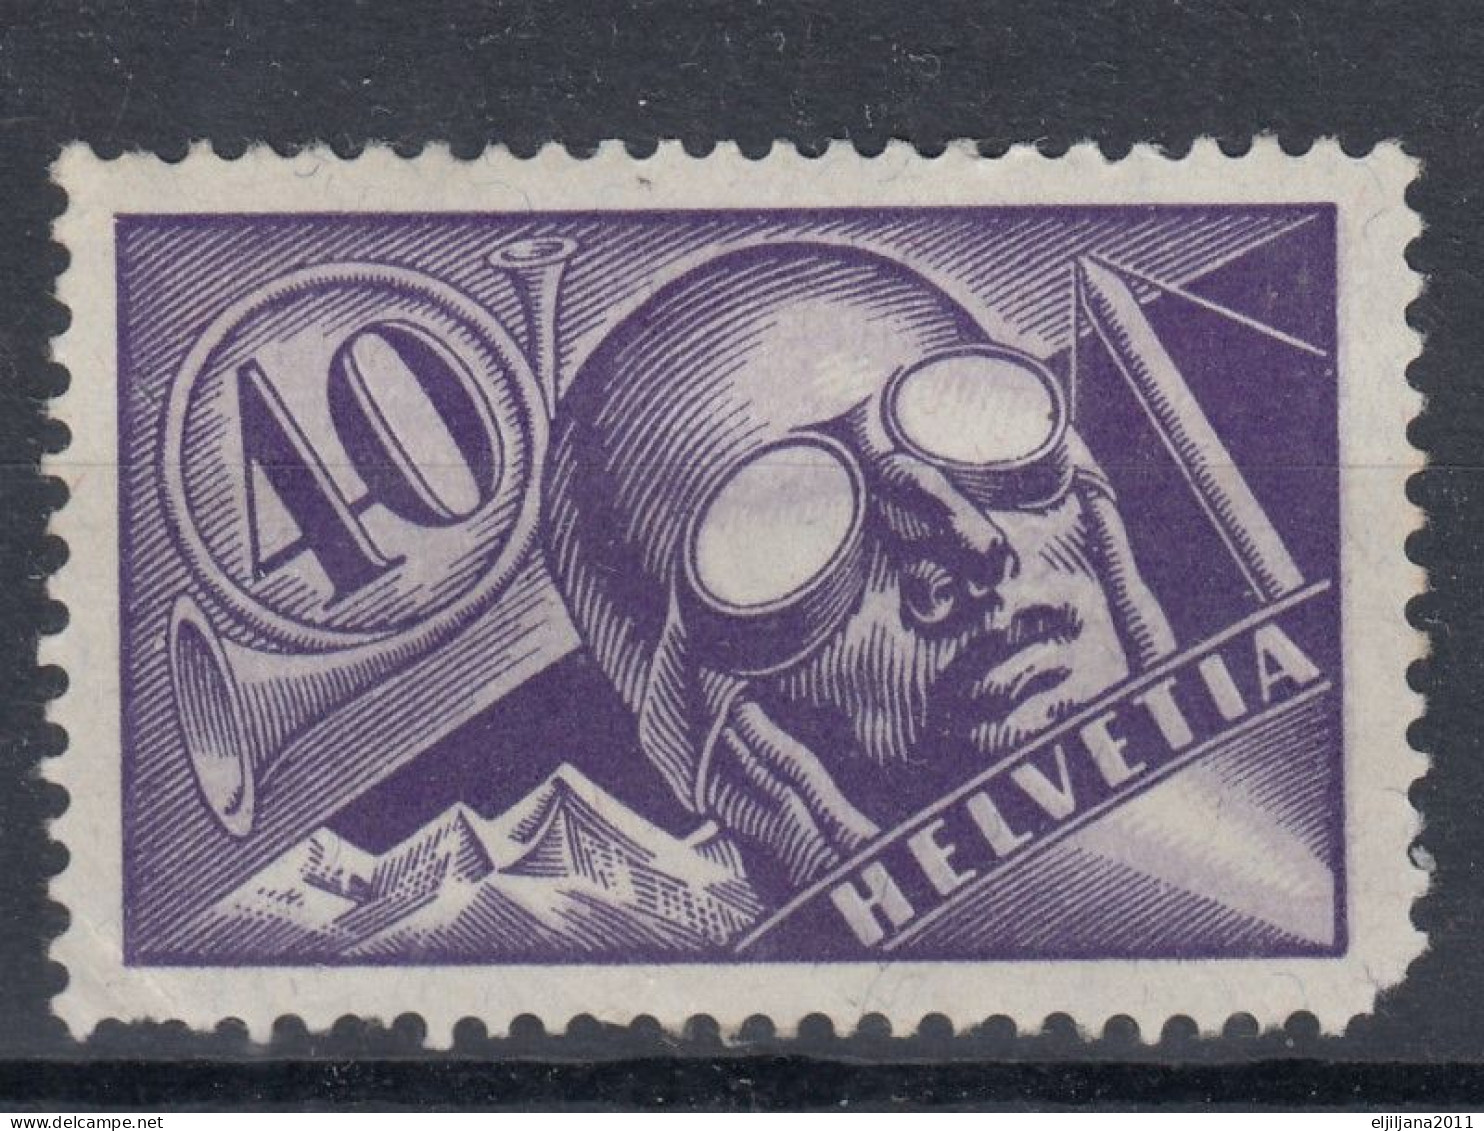 Switzerland / Helvetia / Schweiz / Suisse 1923 ⁕ Pilot - Airmail 40 C. Mi.182 ⁕ 1v MH (damaged) - Neufs